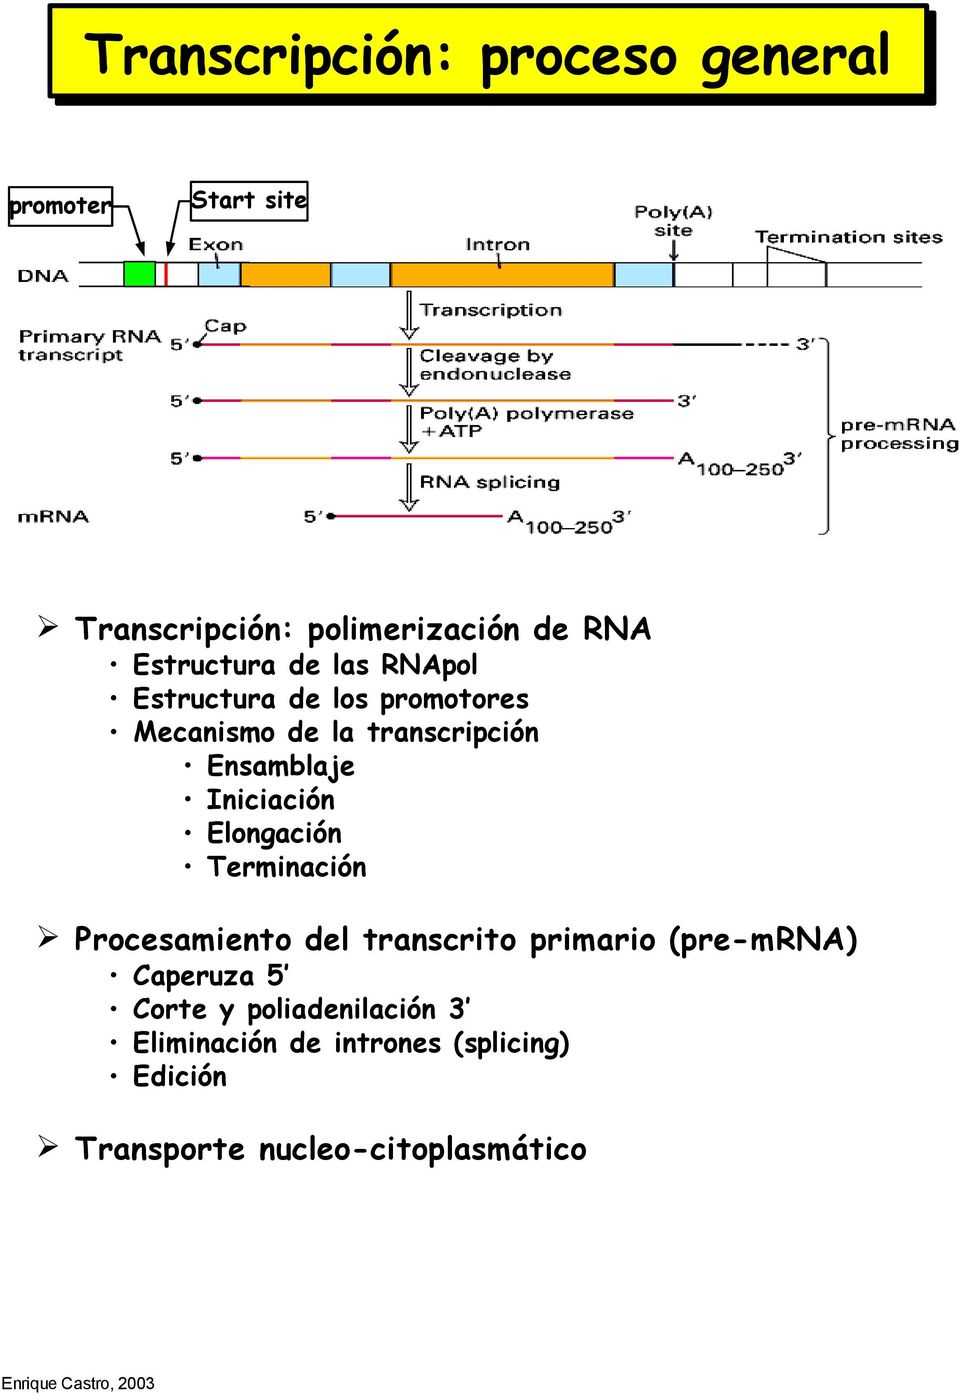 Iniciación Elongación Terminación Procesamiento del transcrito primario (pre-mrna) Caperuza 5